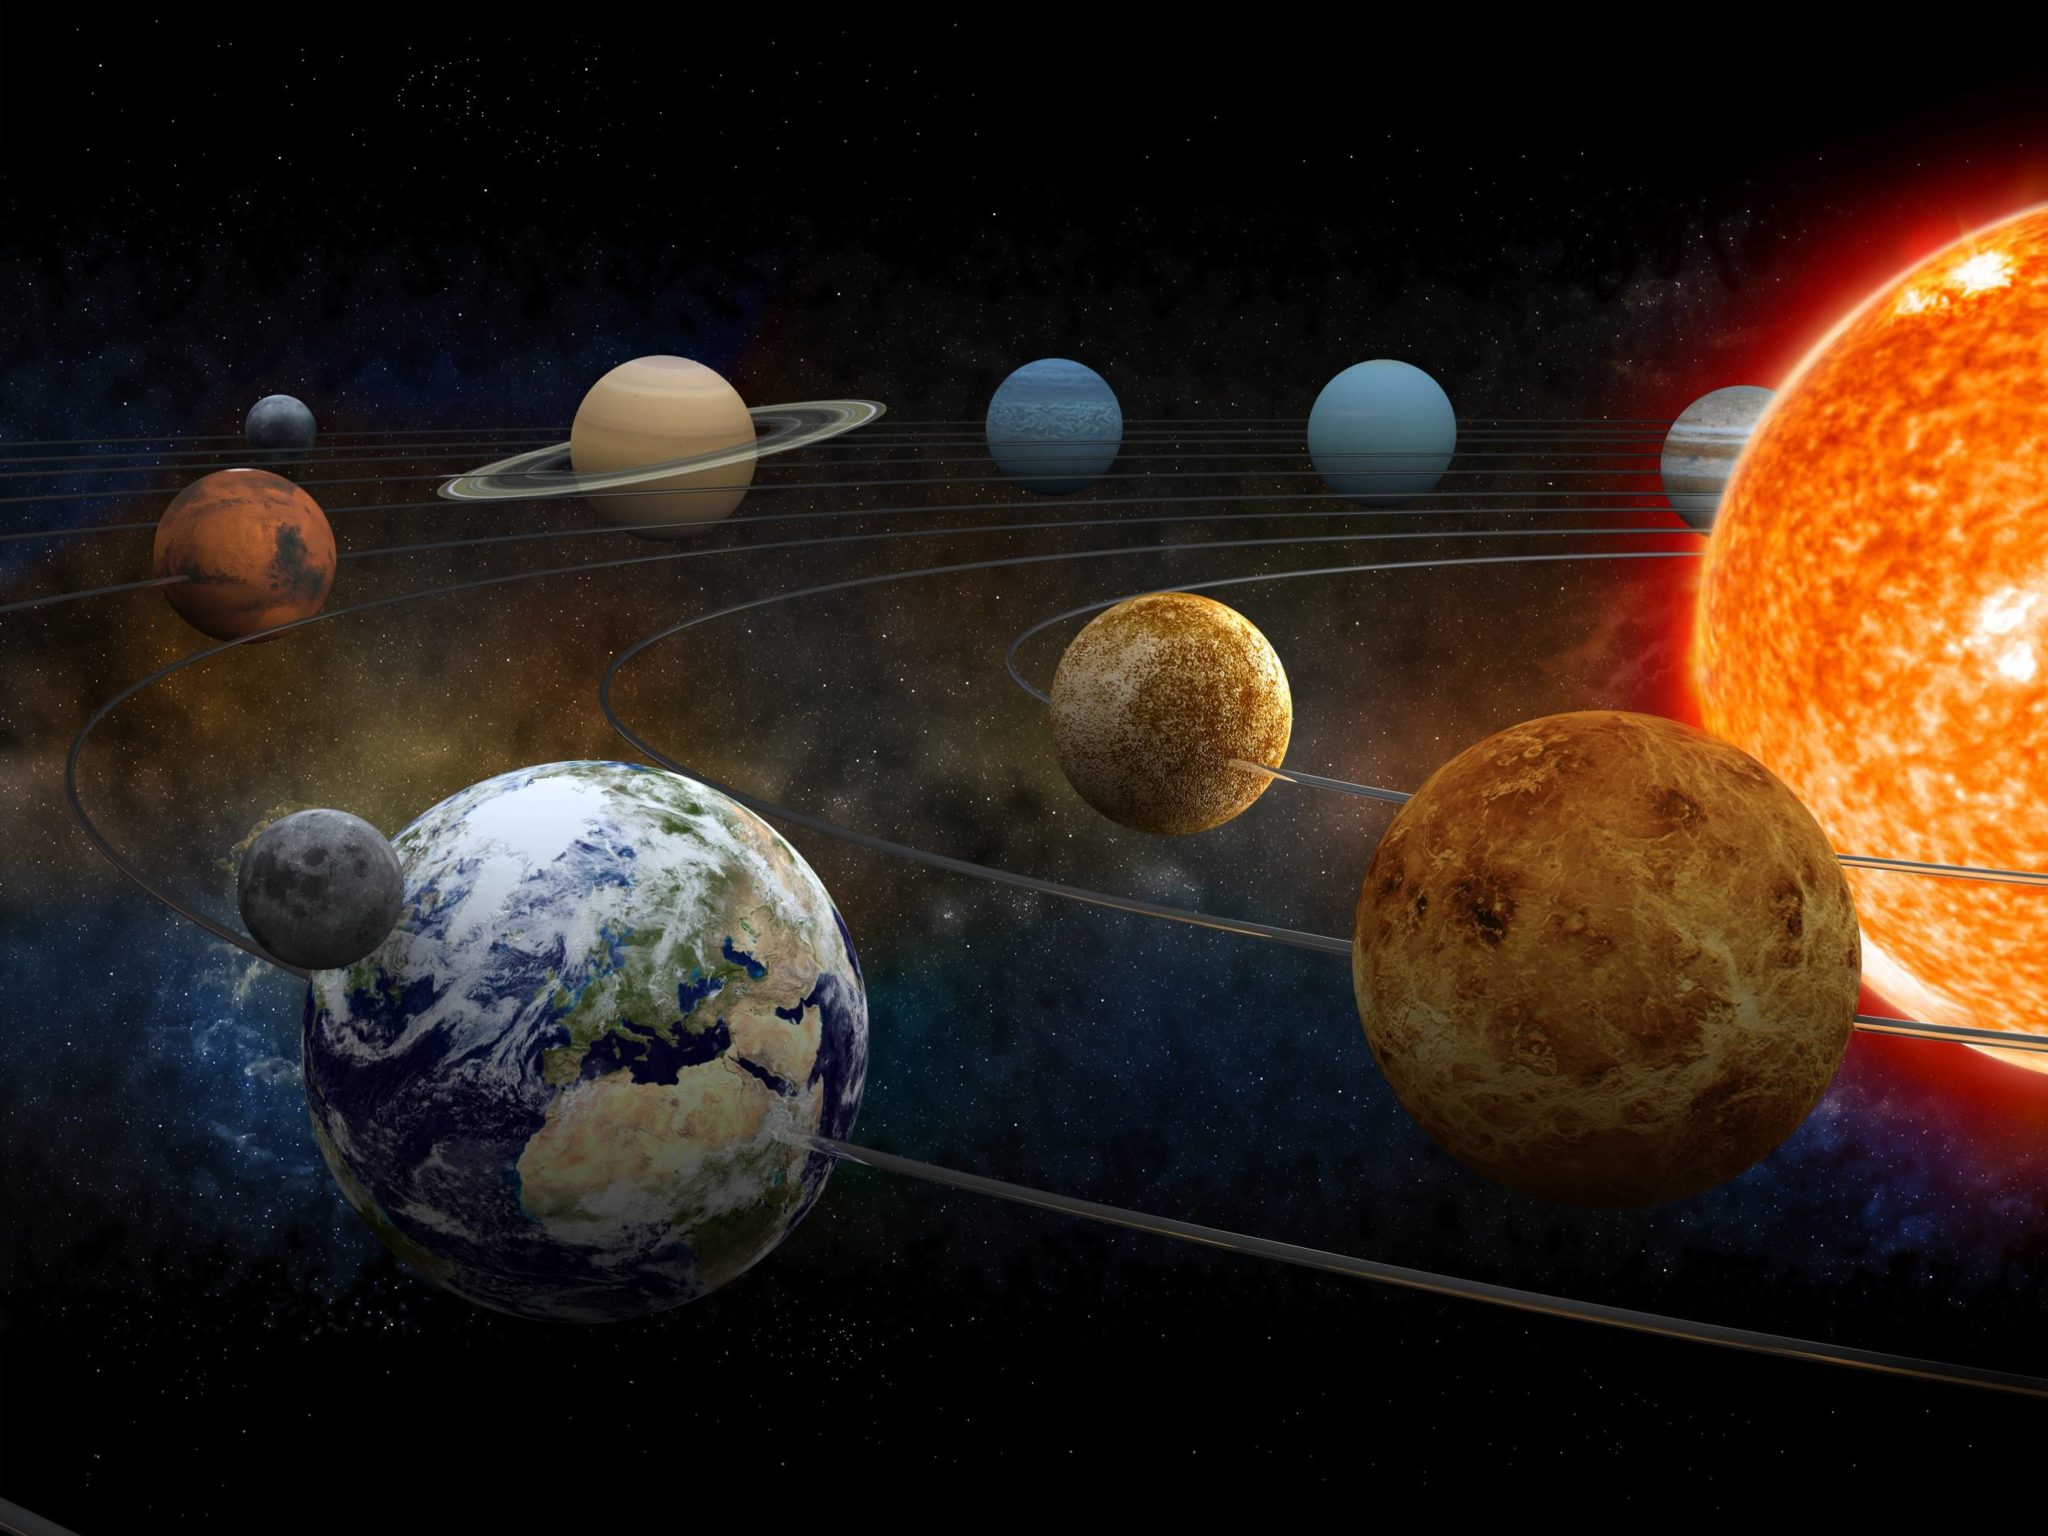 Sistema solar: saiba o que é e conheça nossos planetas vizinhos